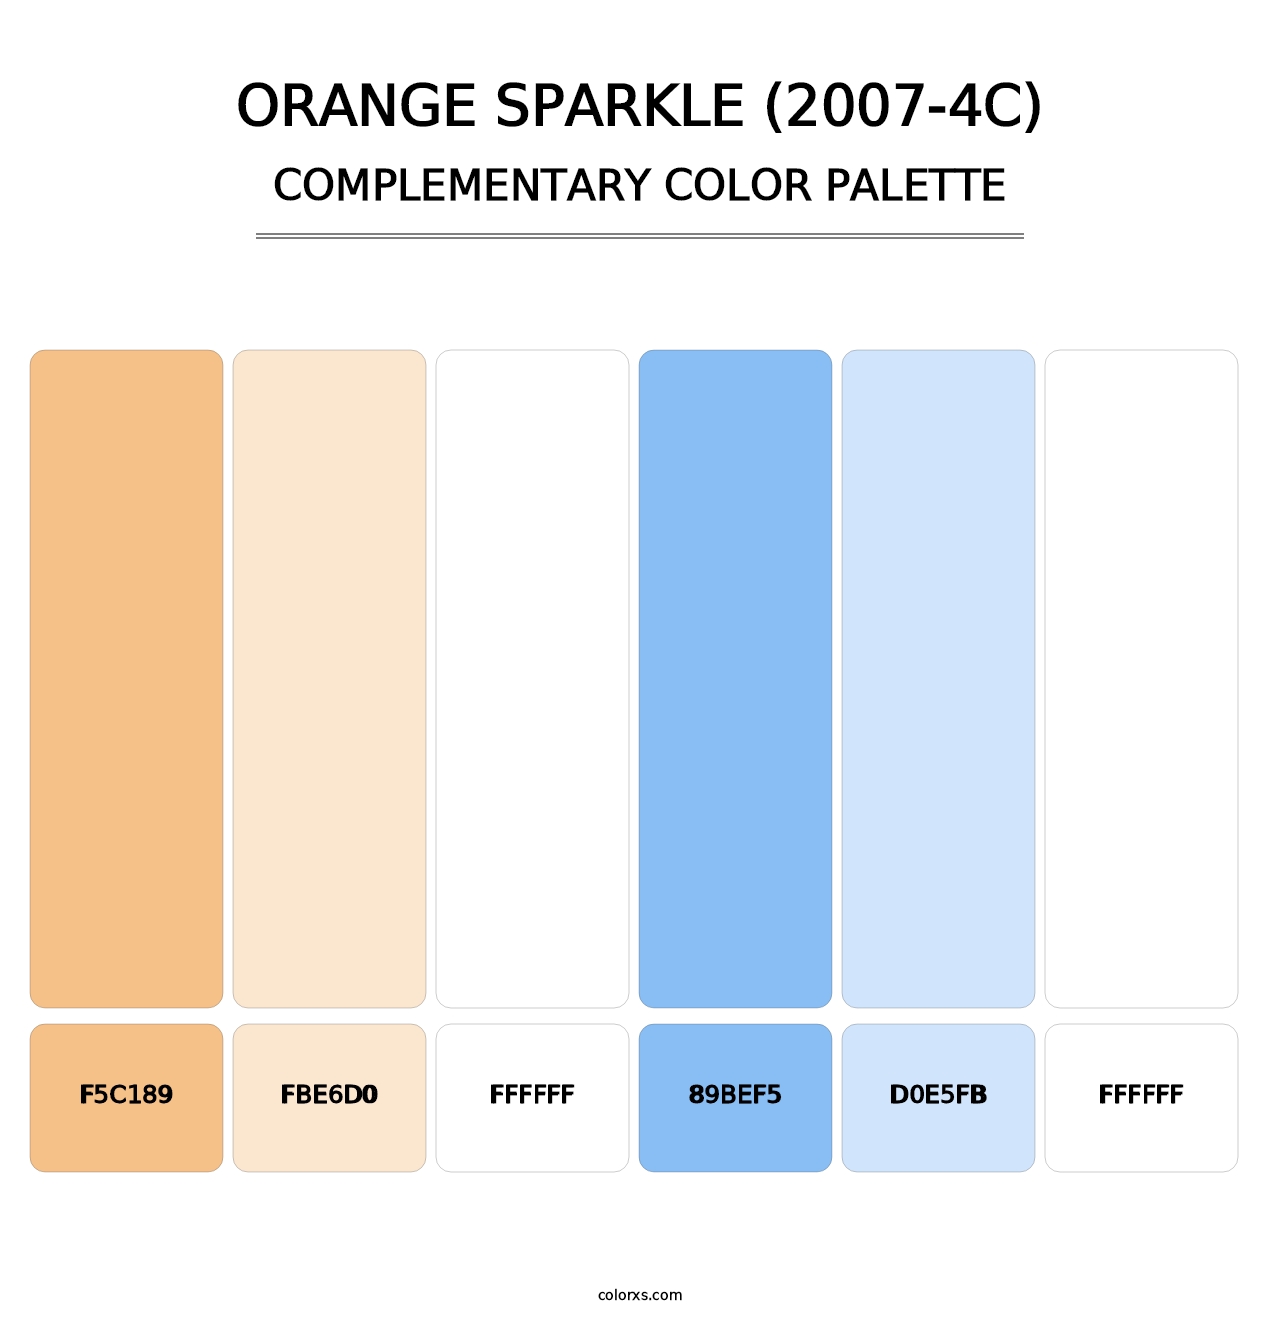 Orange Sparkle (2007-4C) - Complementary Color Palette